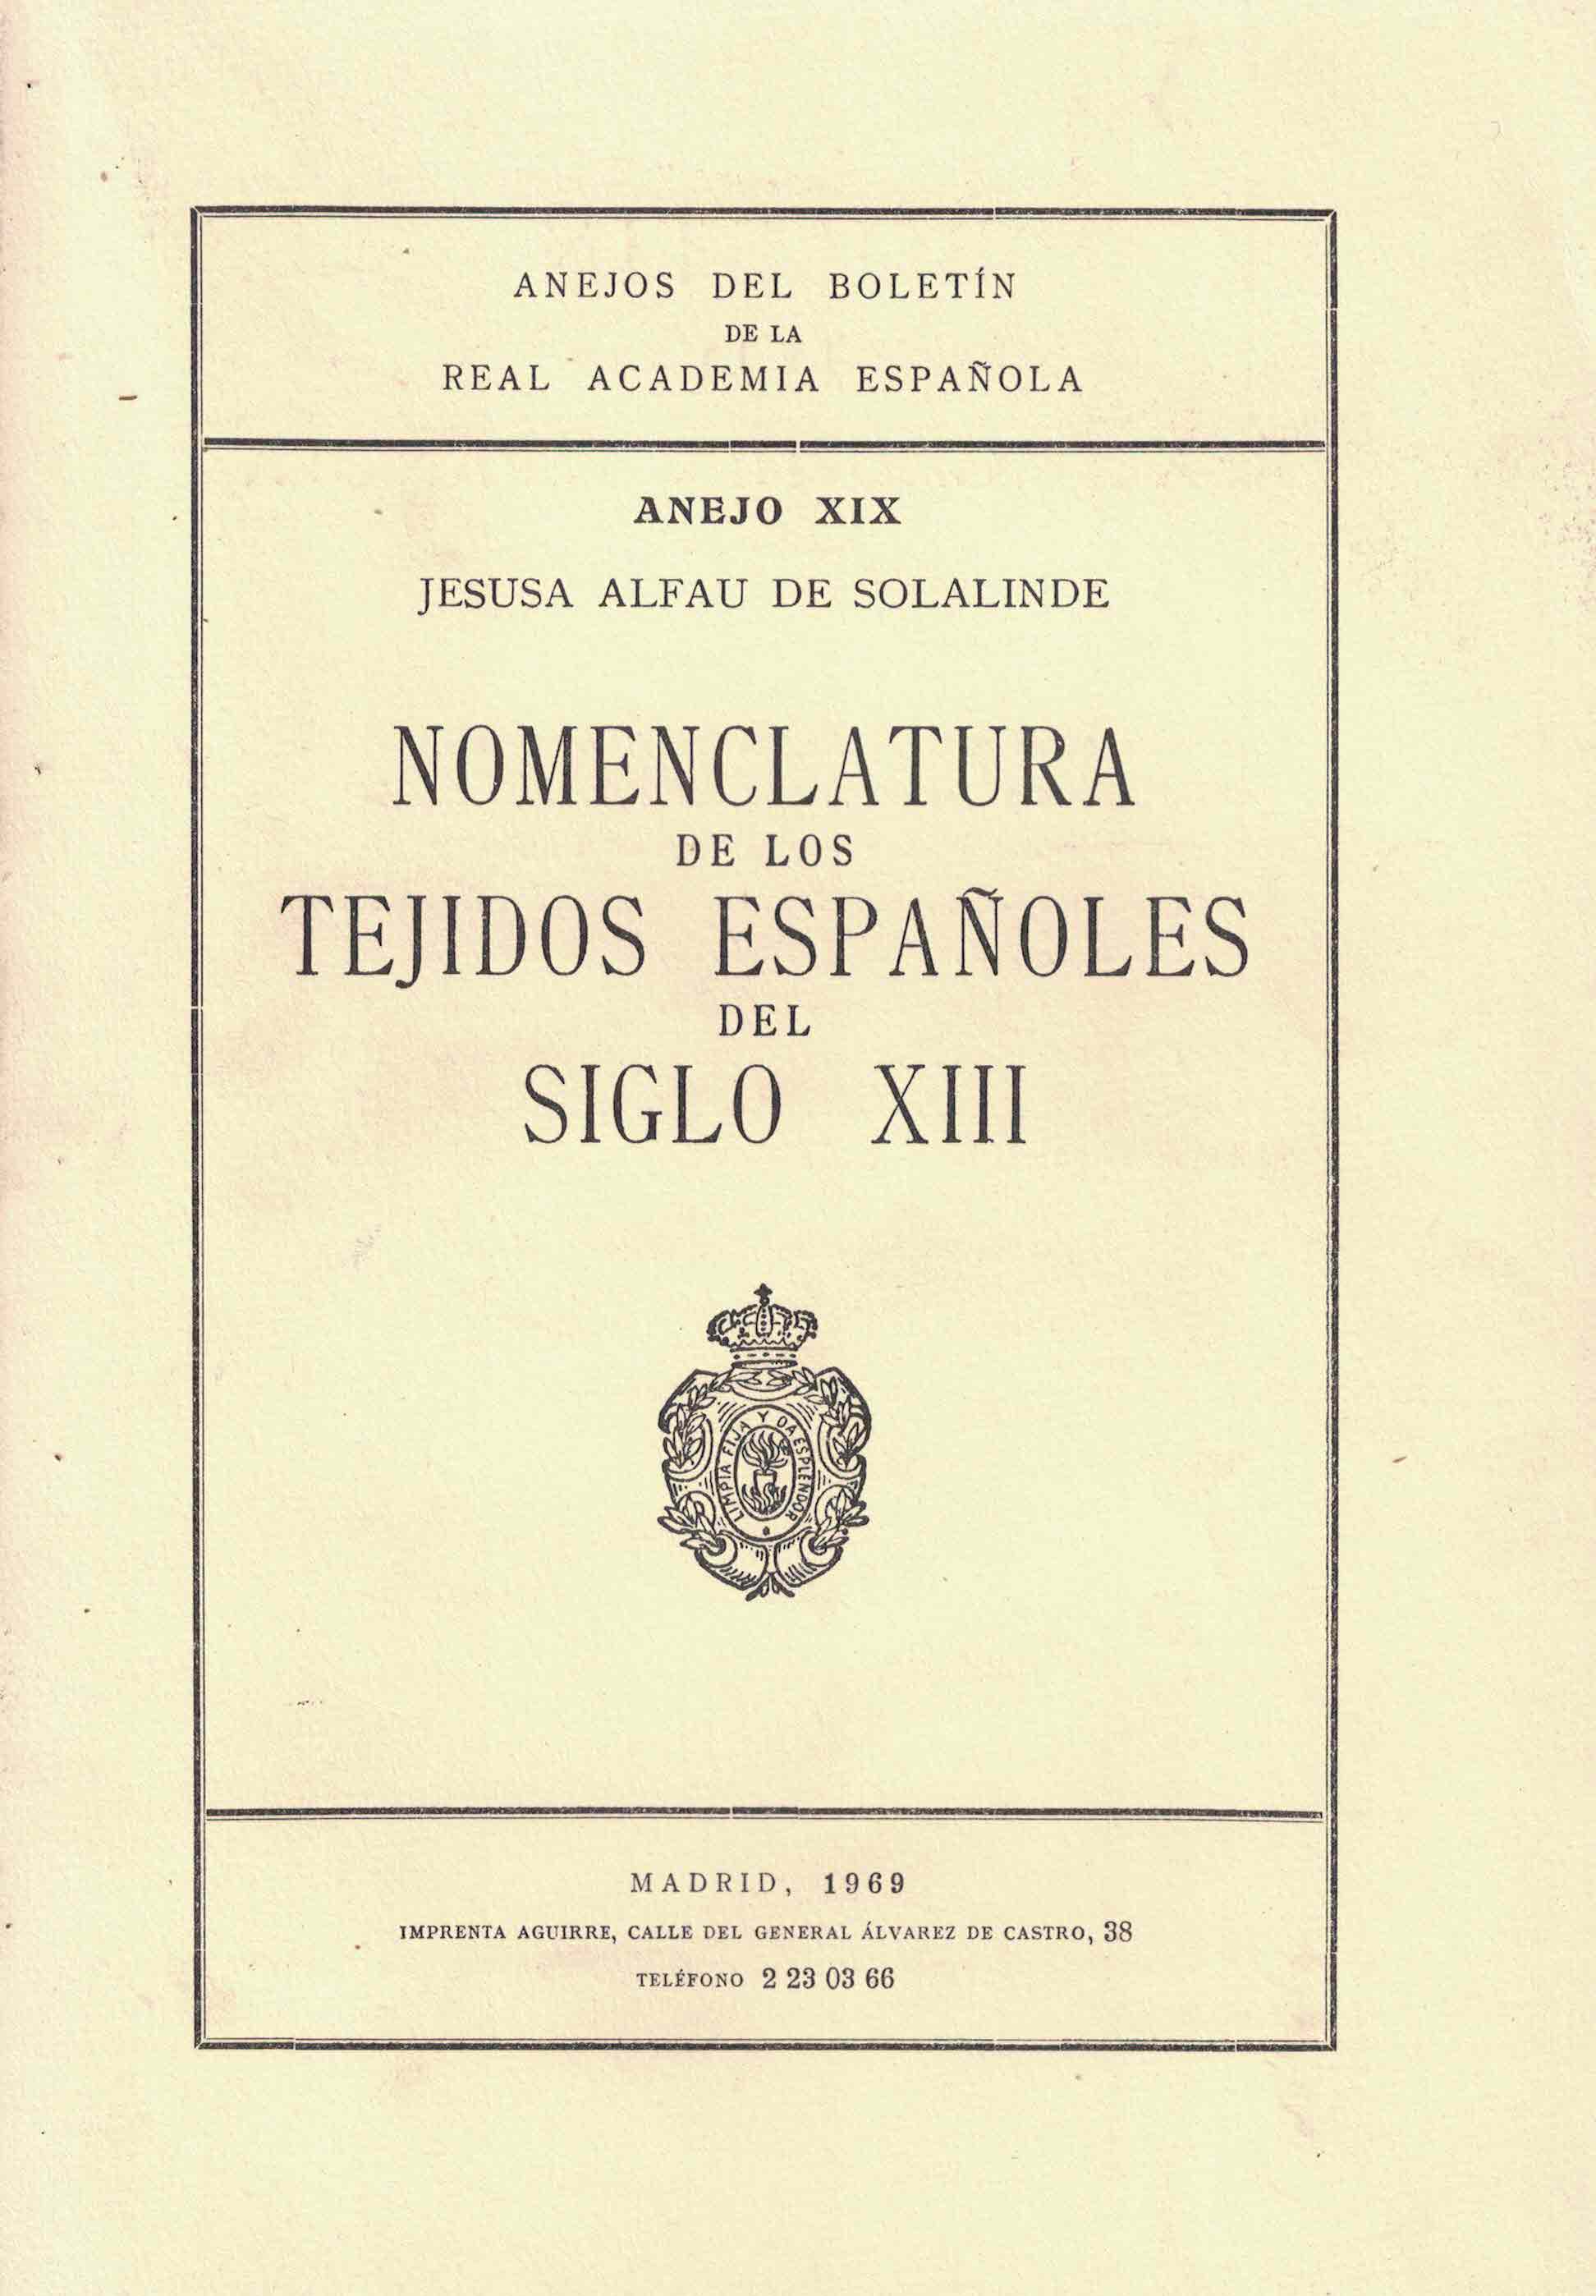 Nomenclatura de los tejidos españoles del siglo XIII